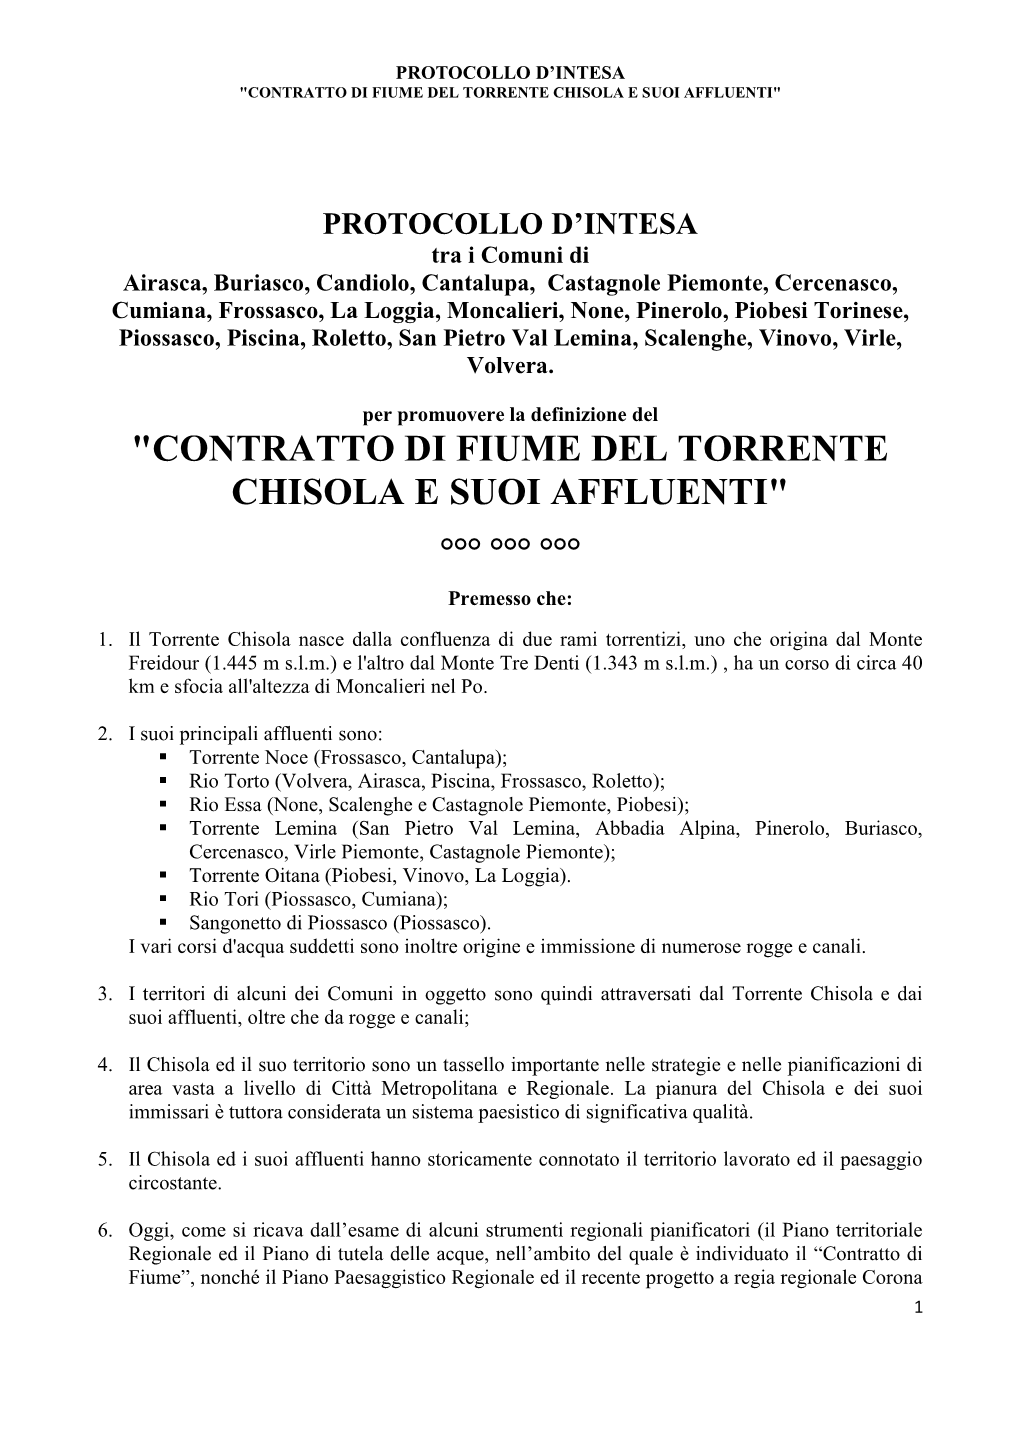 "Contratto Di Fiume Del Torrente Chisola E Suoi Affluenti"